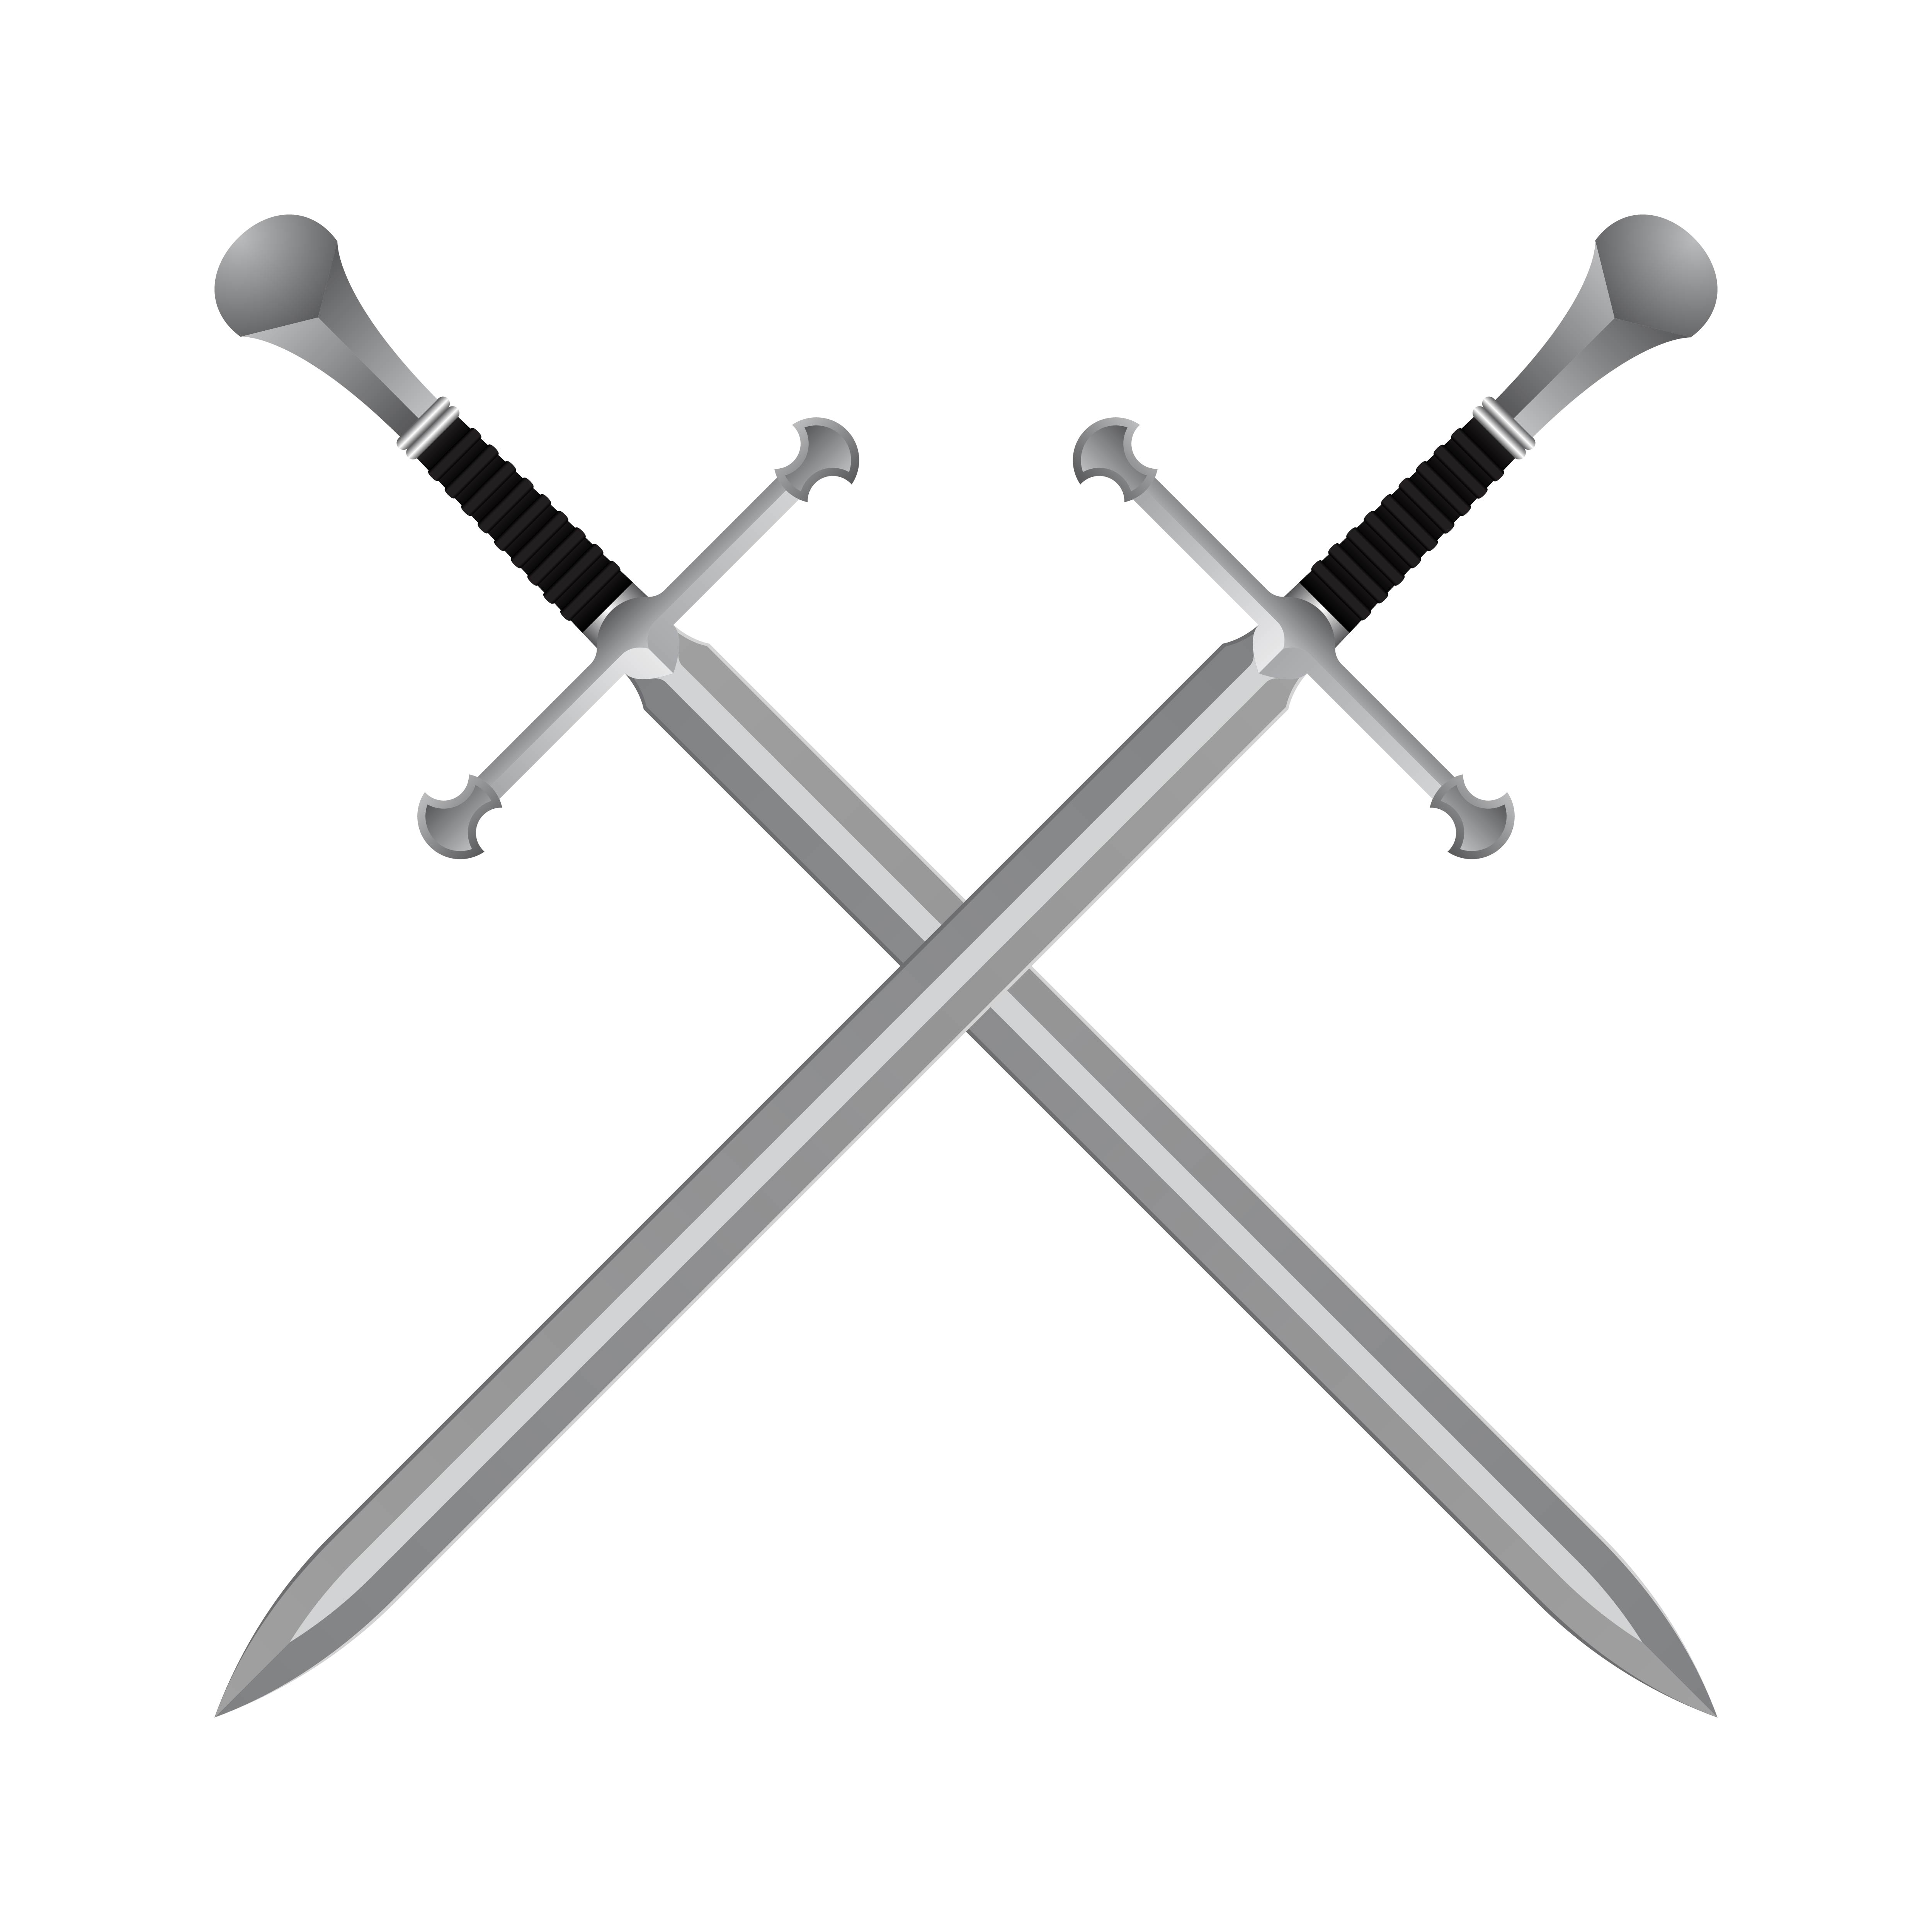 Medieval crossed swords 1214069 Vector Art at Vecteezy